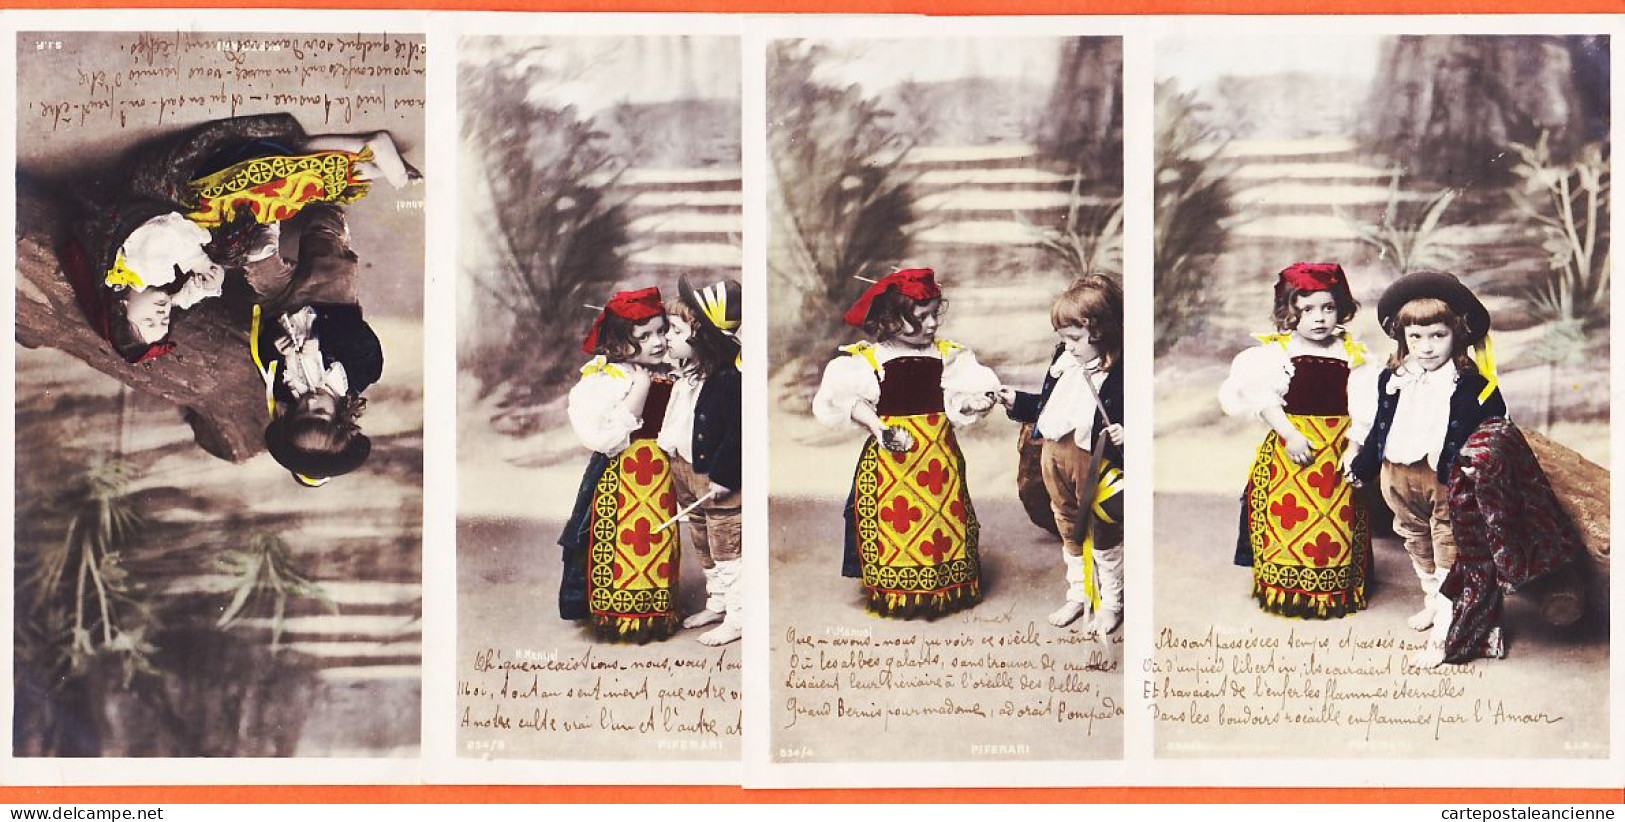 01600 / Peu Commun Série 834 Incomplète N° 1-4-8-13 PIFERARI Fillette Garçonnet Costumés 1900s Photo-Bromure MANUEL - Children And Family Groups